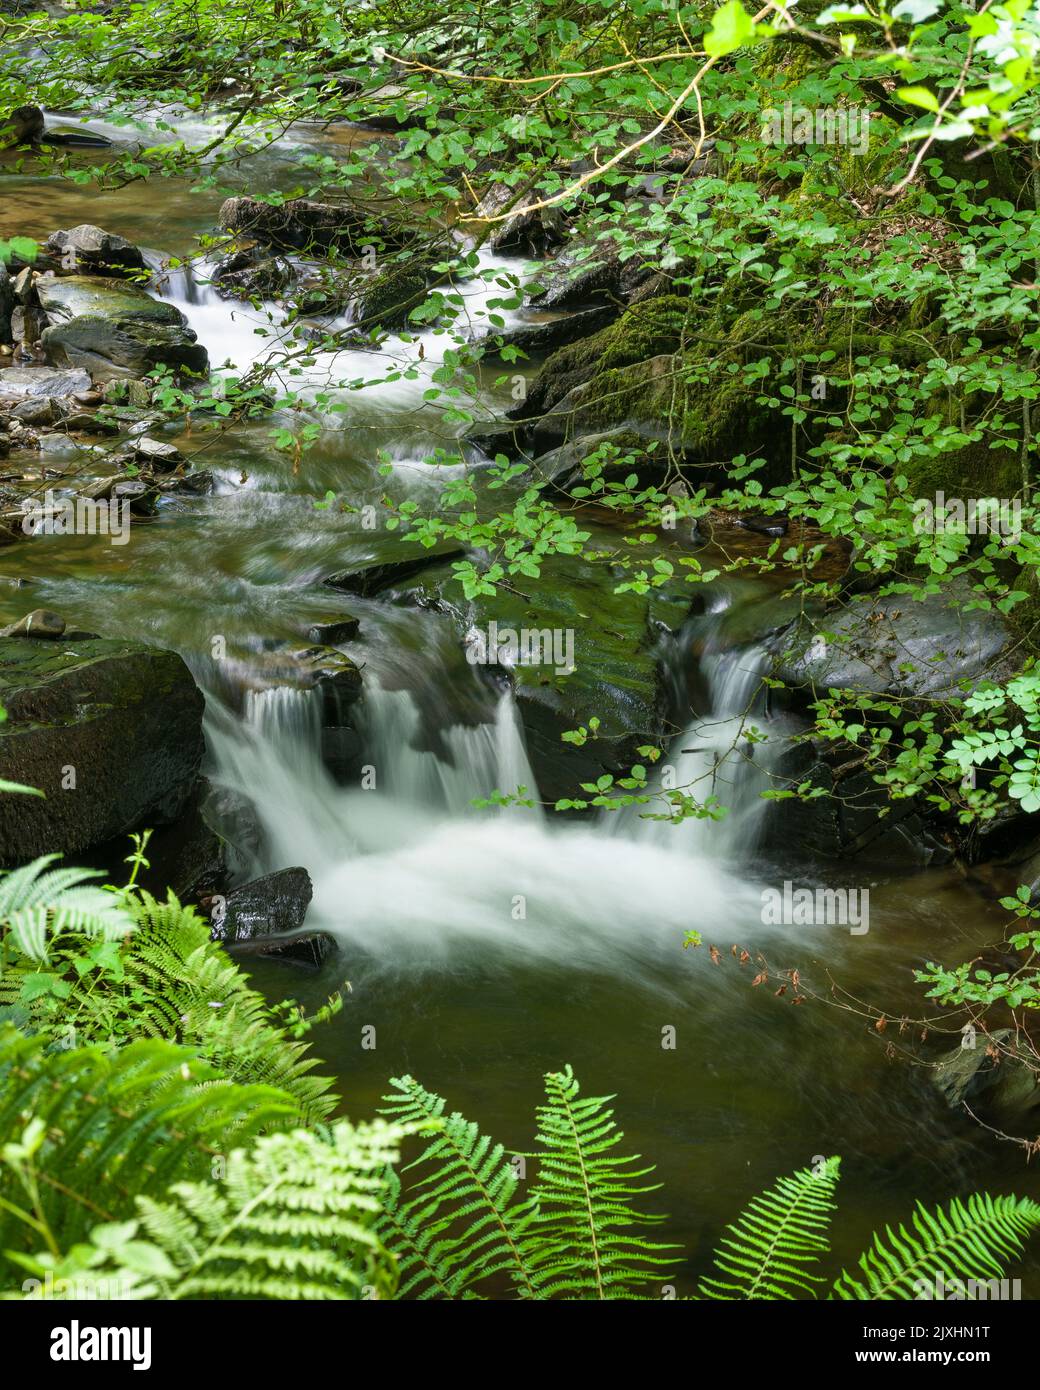 La rivière Heddon en cascade sur des rochers dans les bois dans le parc national d'Exmoor, North Devon, Angleterre. Banque D'Images